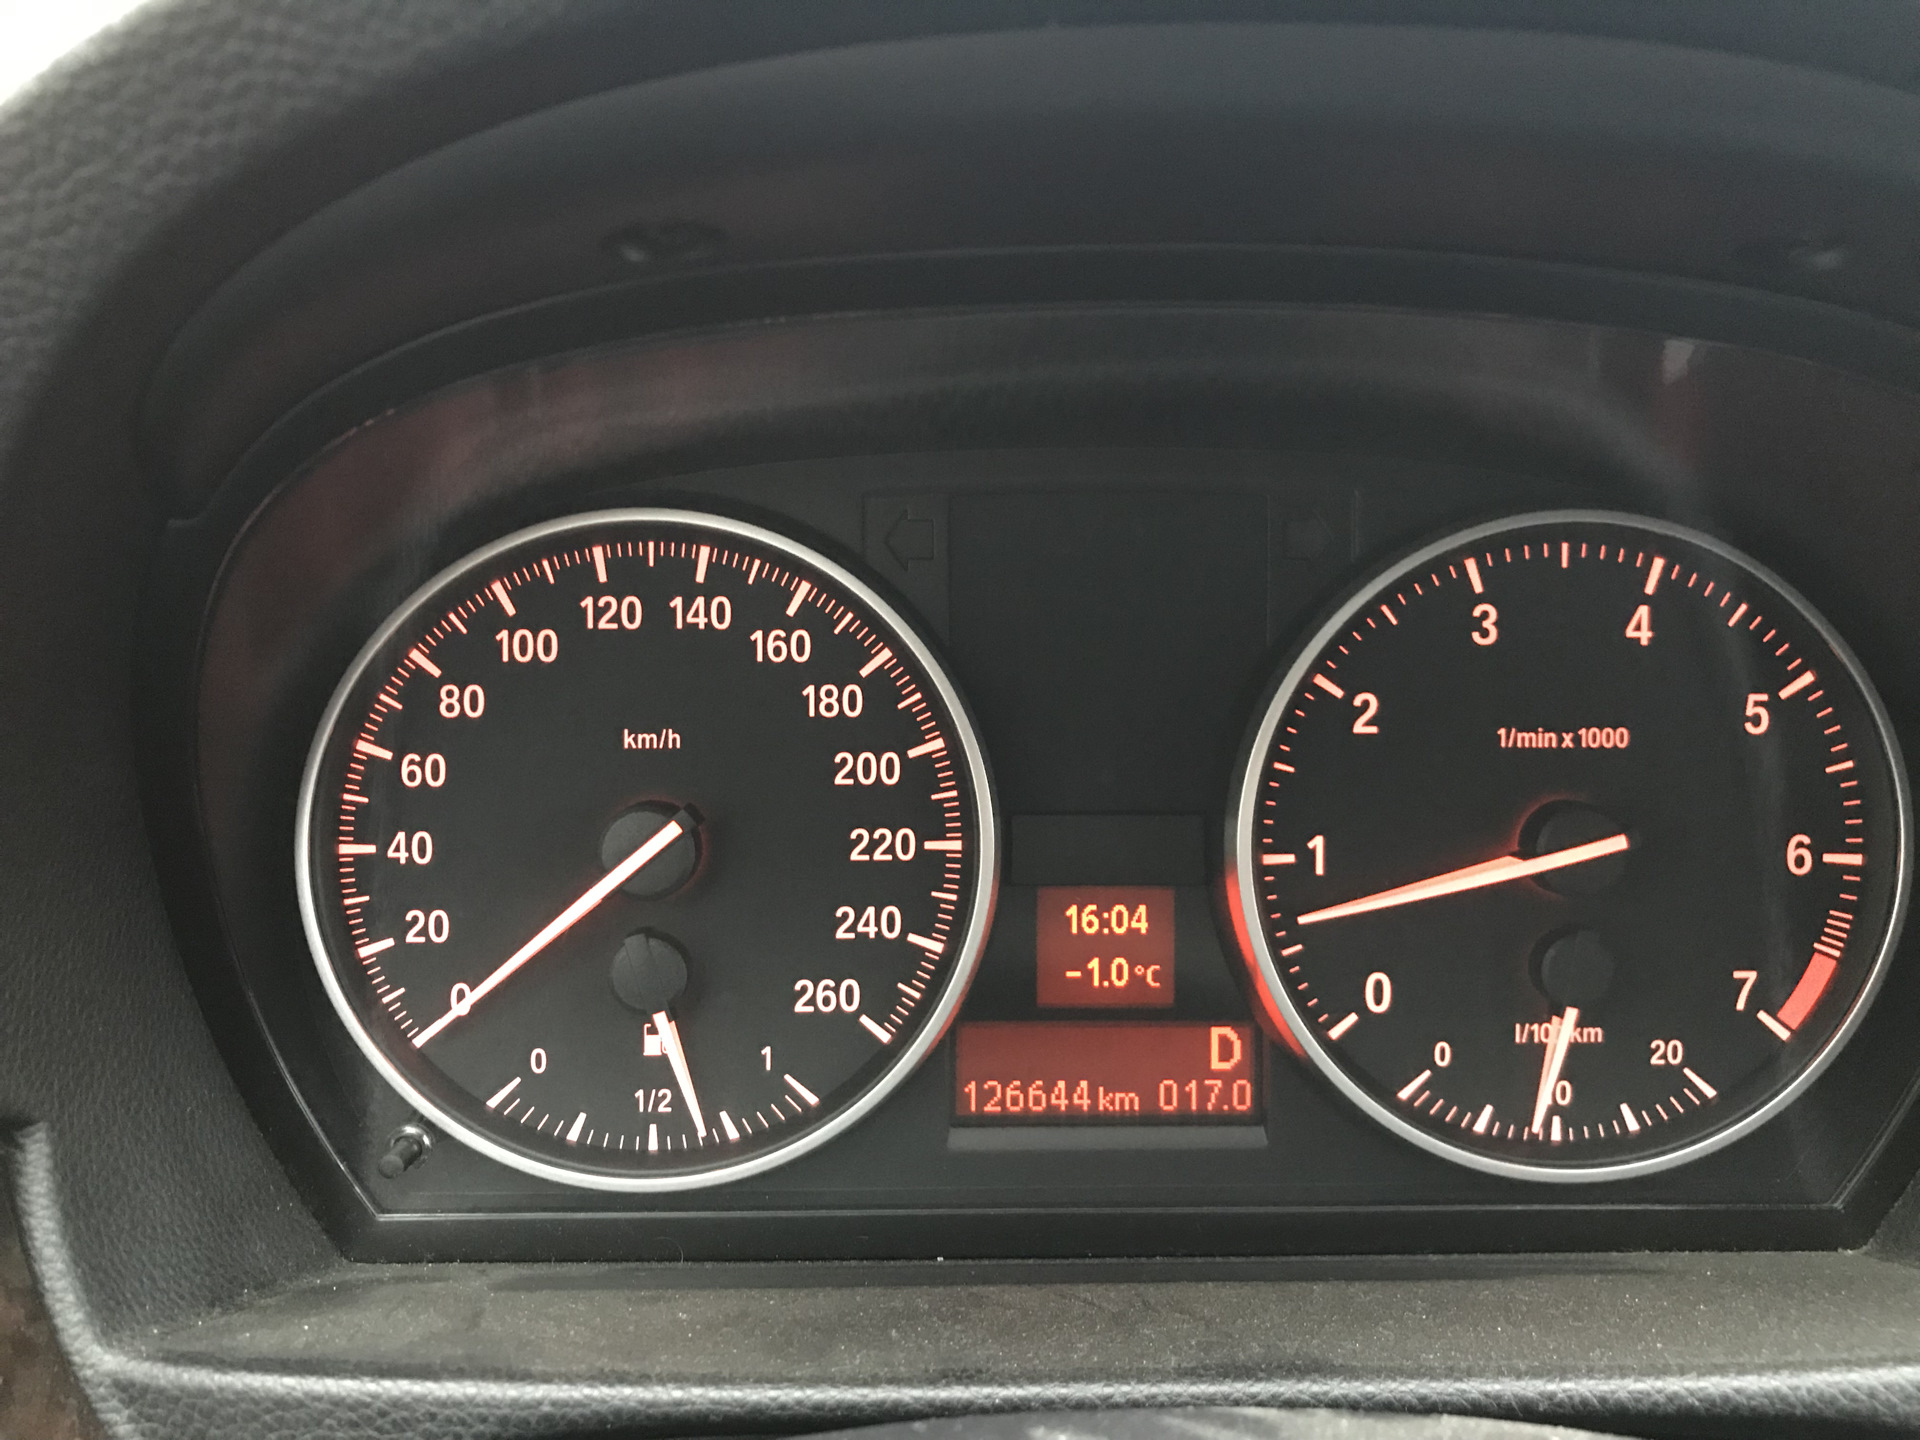 Температура масла бмв. Температура масла на приборке BMW f22. W140 7.3 480 км на приборке. БМВ 630 температура масла 110.